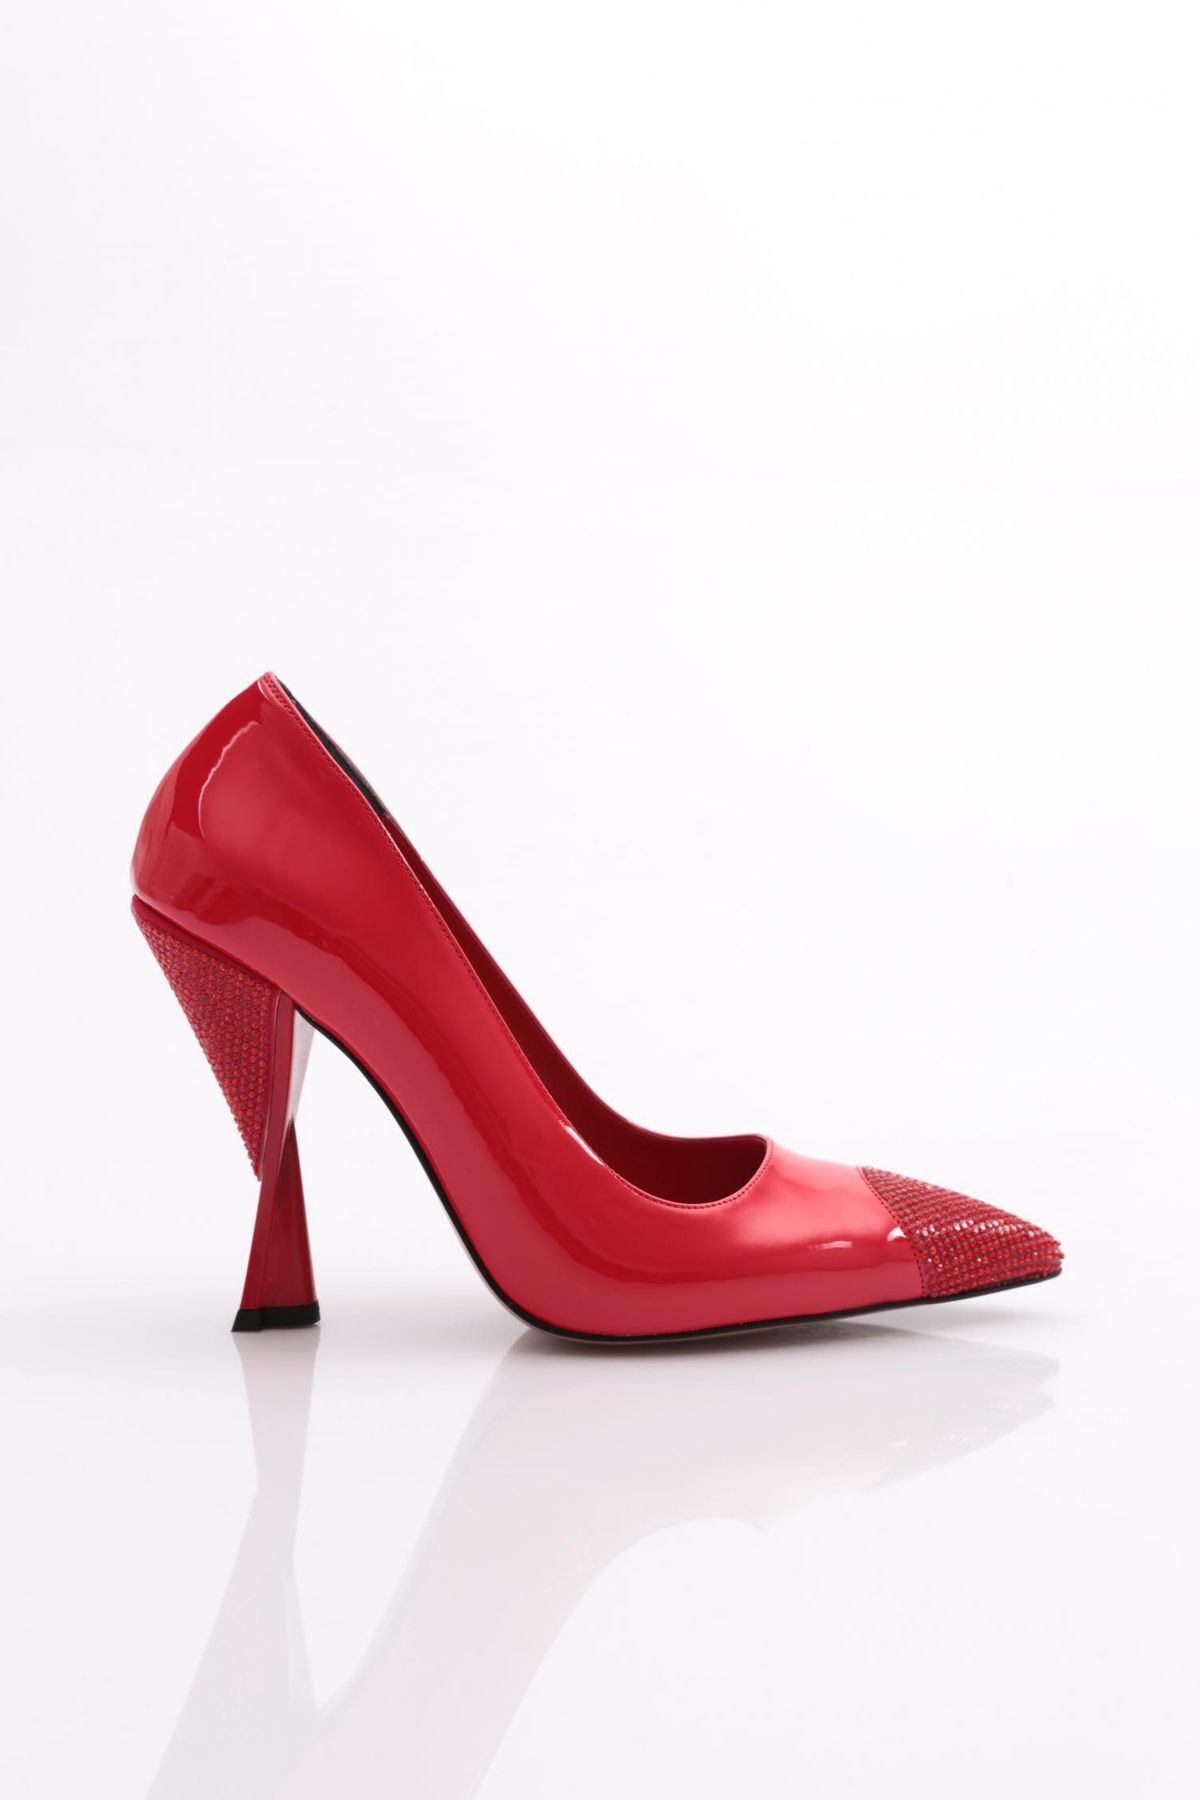 Dgn 132 Kadın Topuklu Ayakkabı Kırmızı Rugan